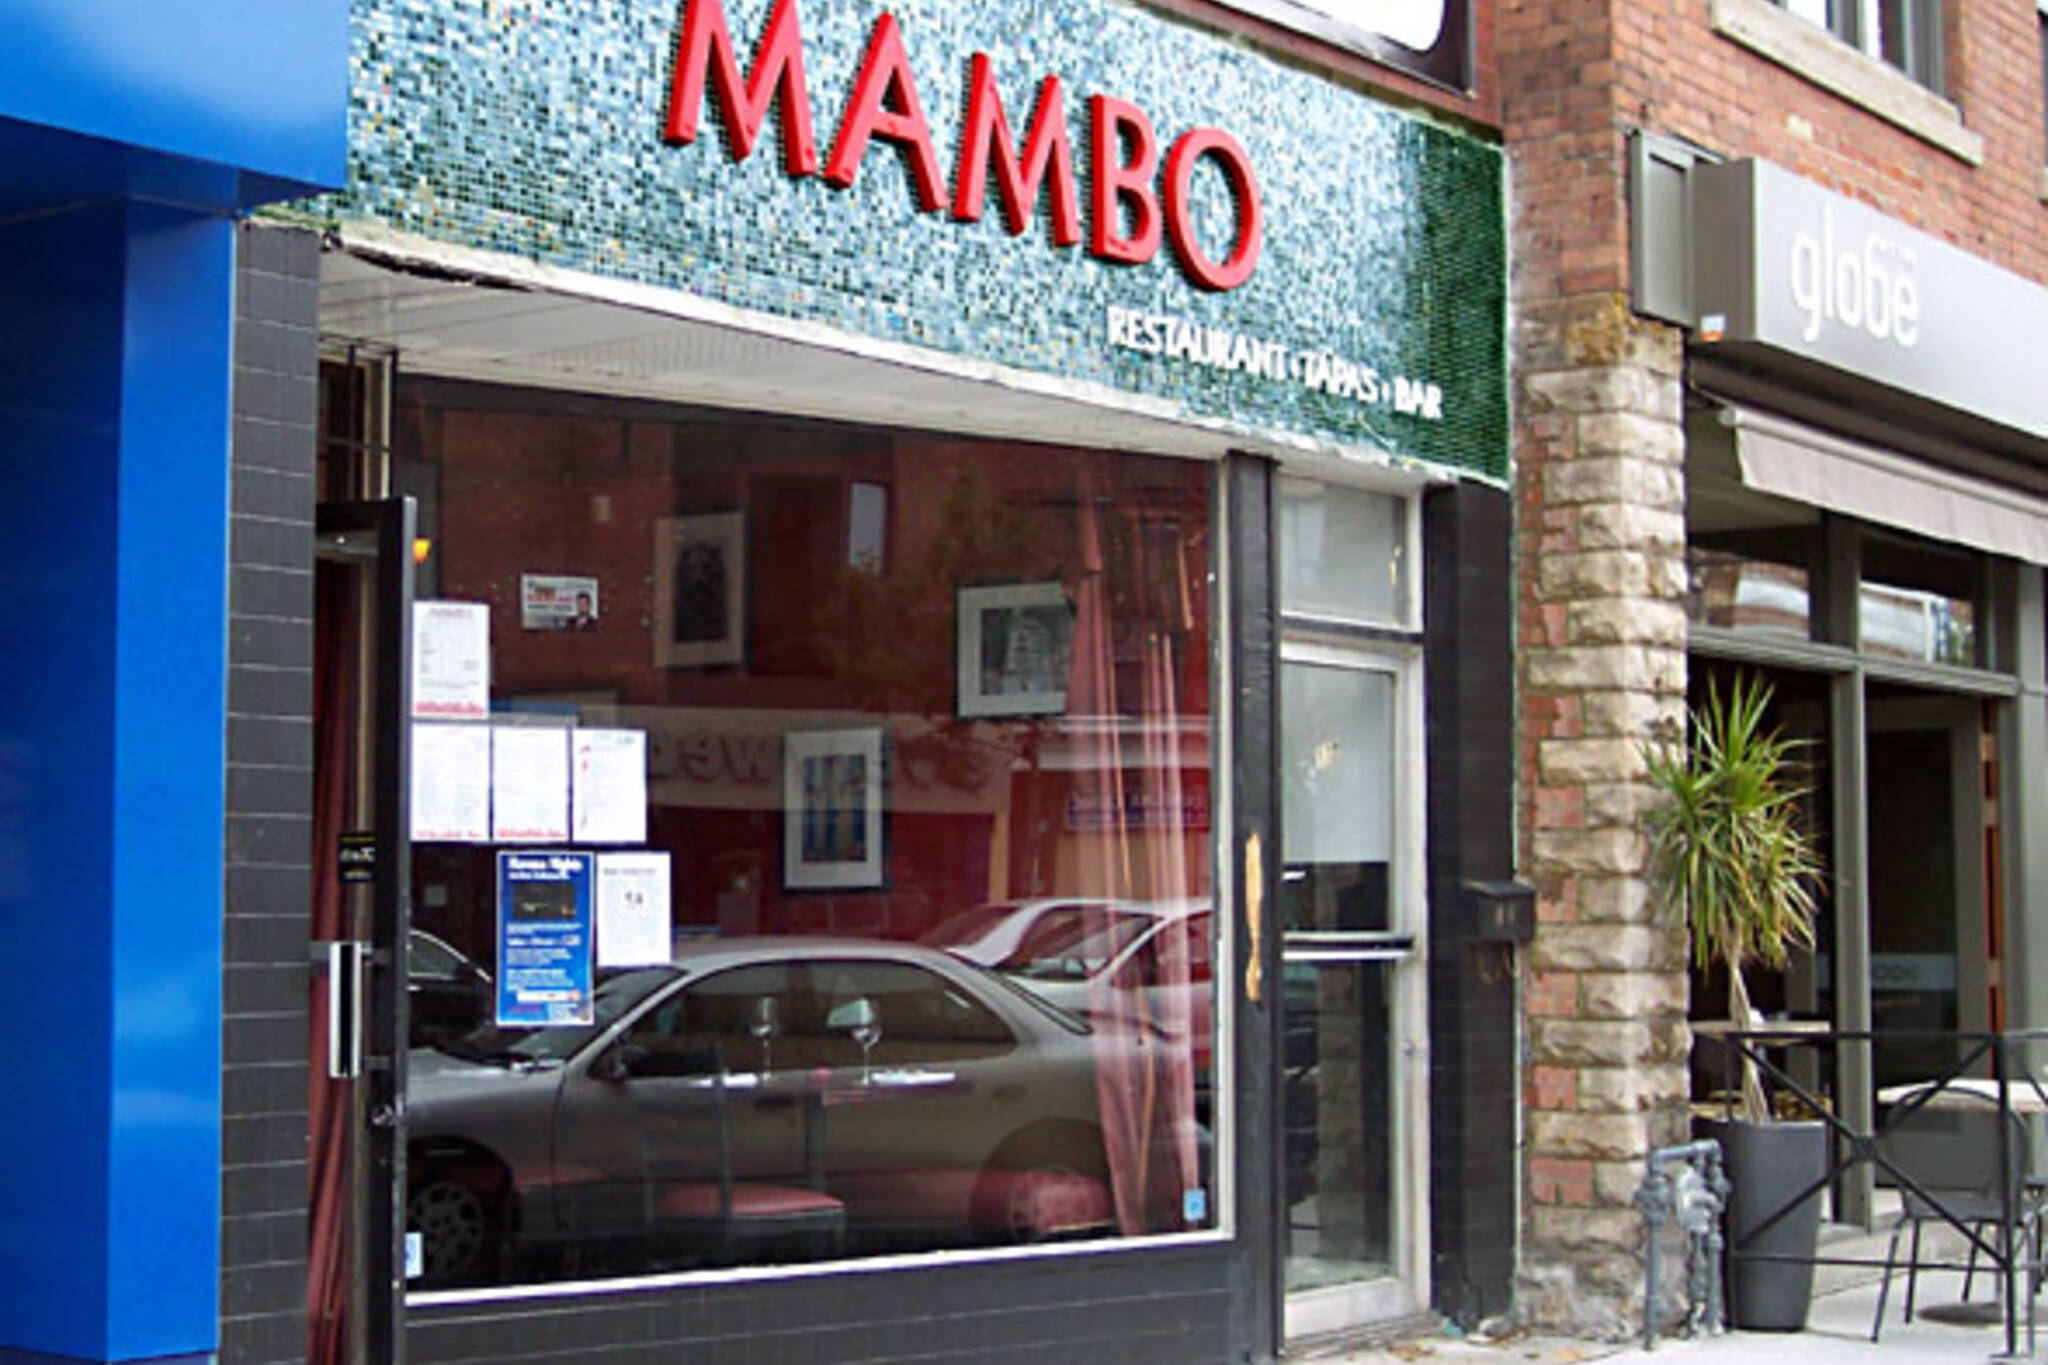 Mambo Lounge